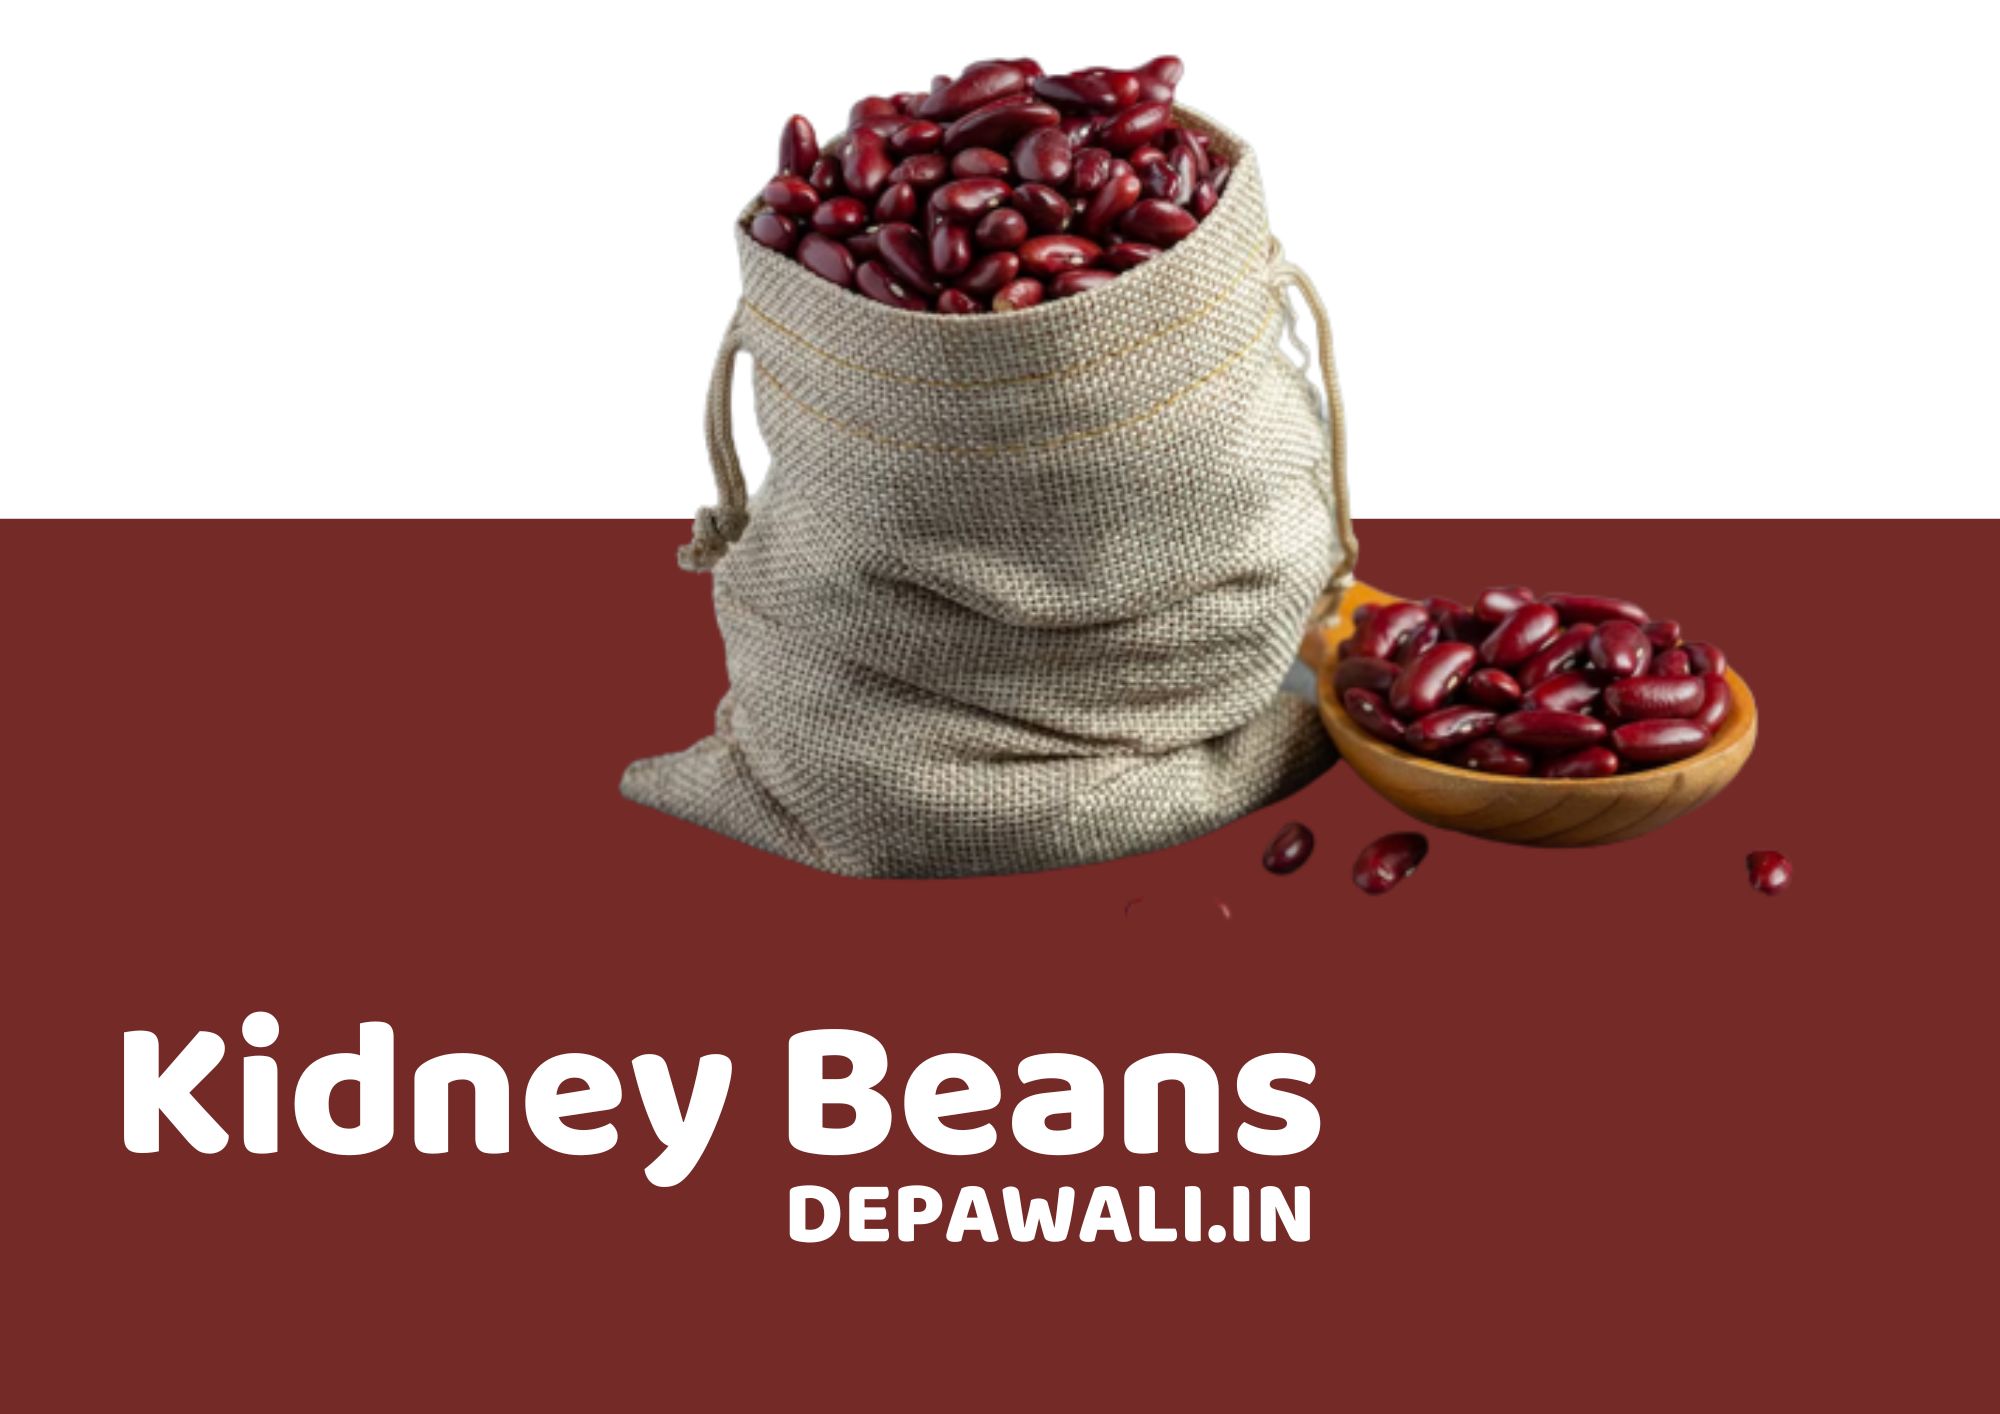 किडनी बीन्स को हिंदी में क्या कहते है, राजमा खाने के फायदे और राजमा खाने के नुकसान - Kidney Beans In Hindi